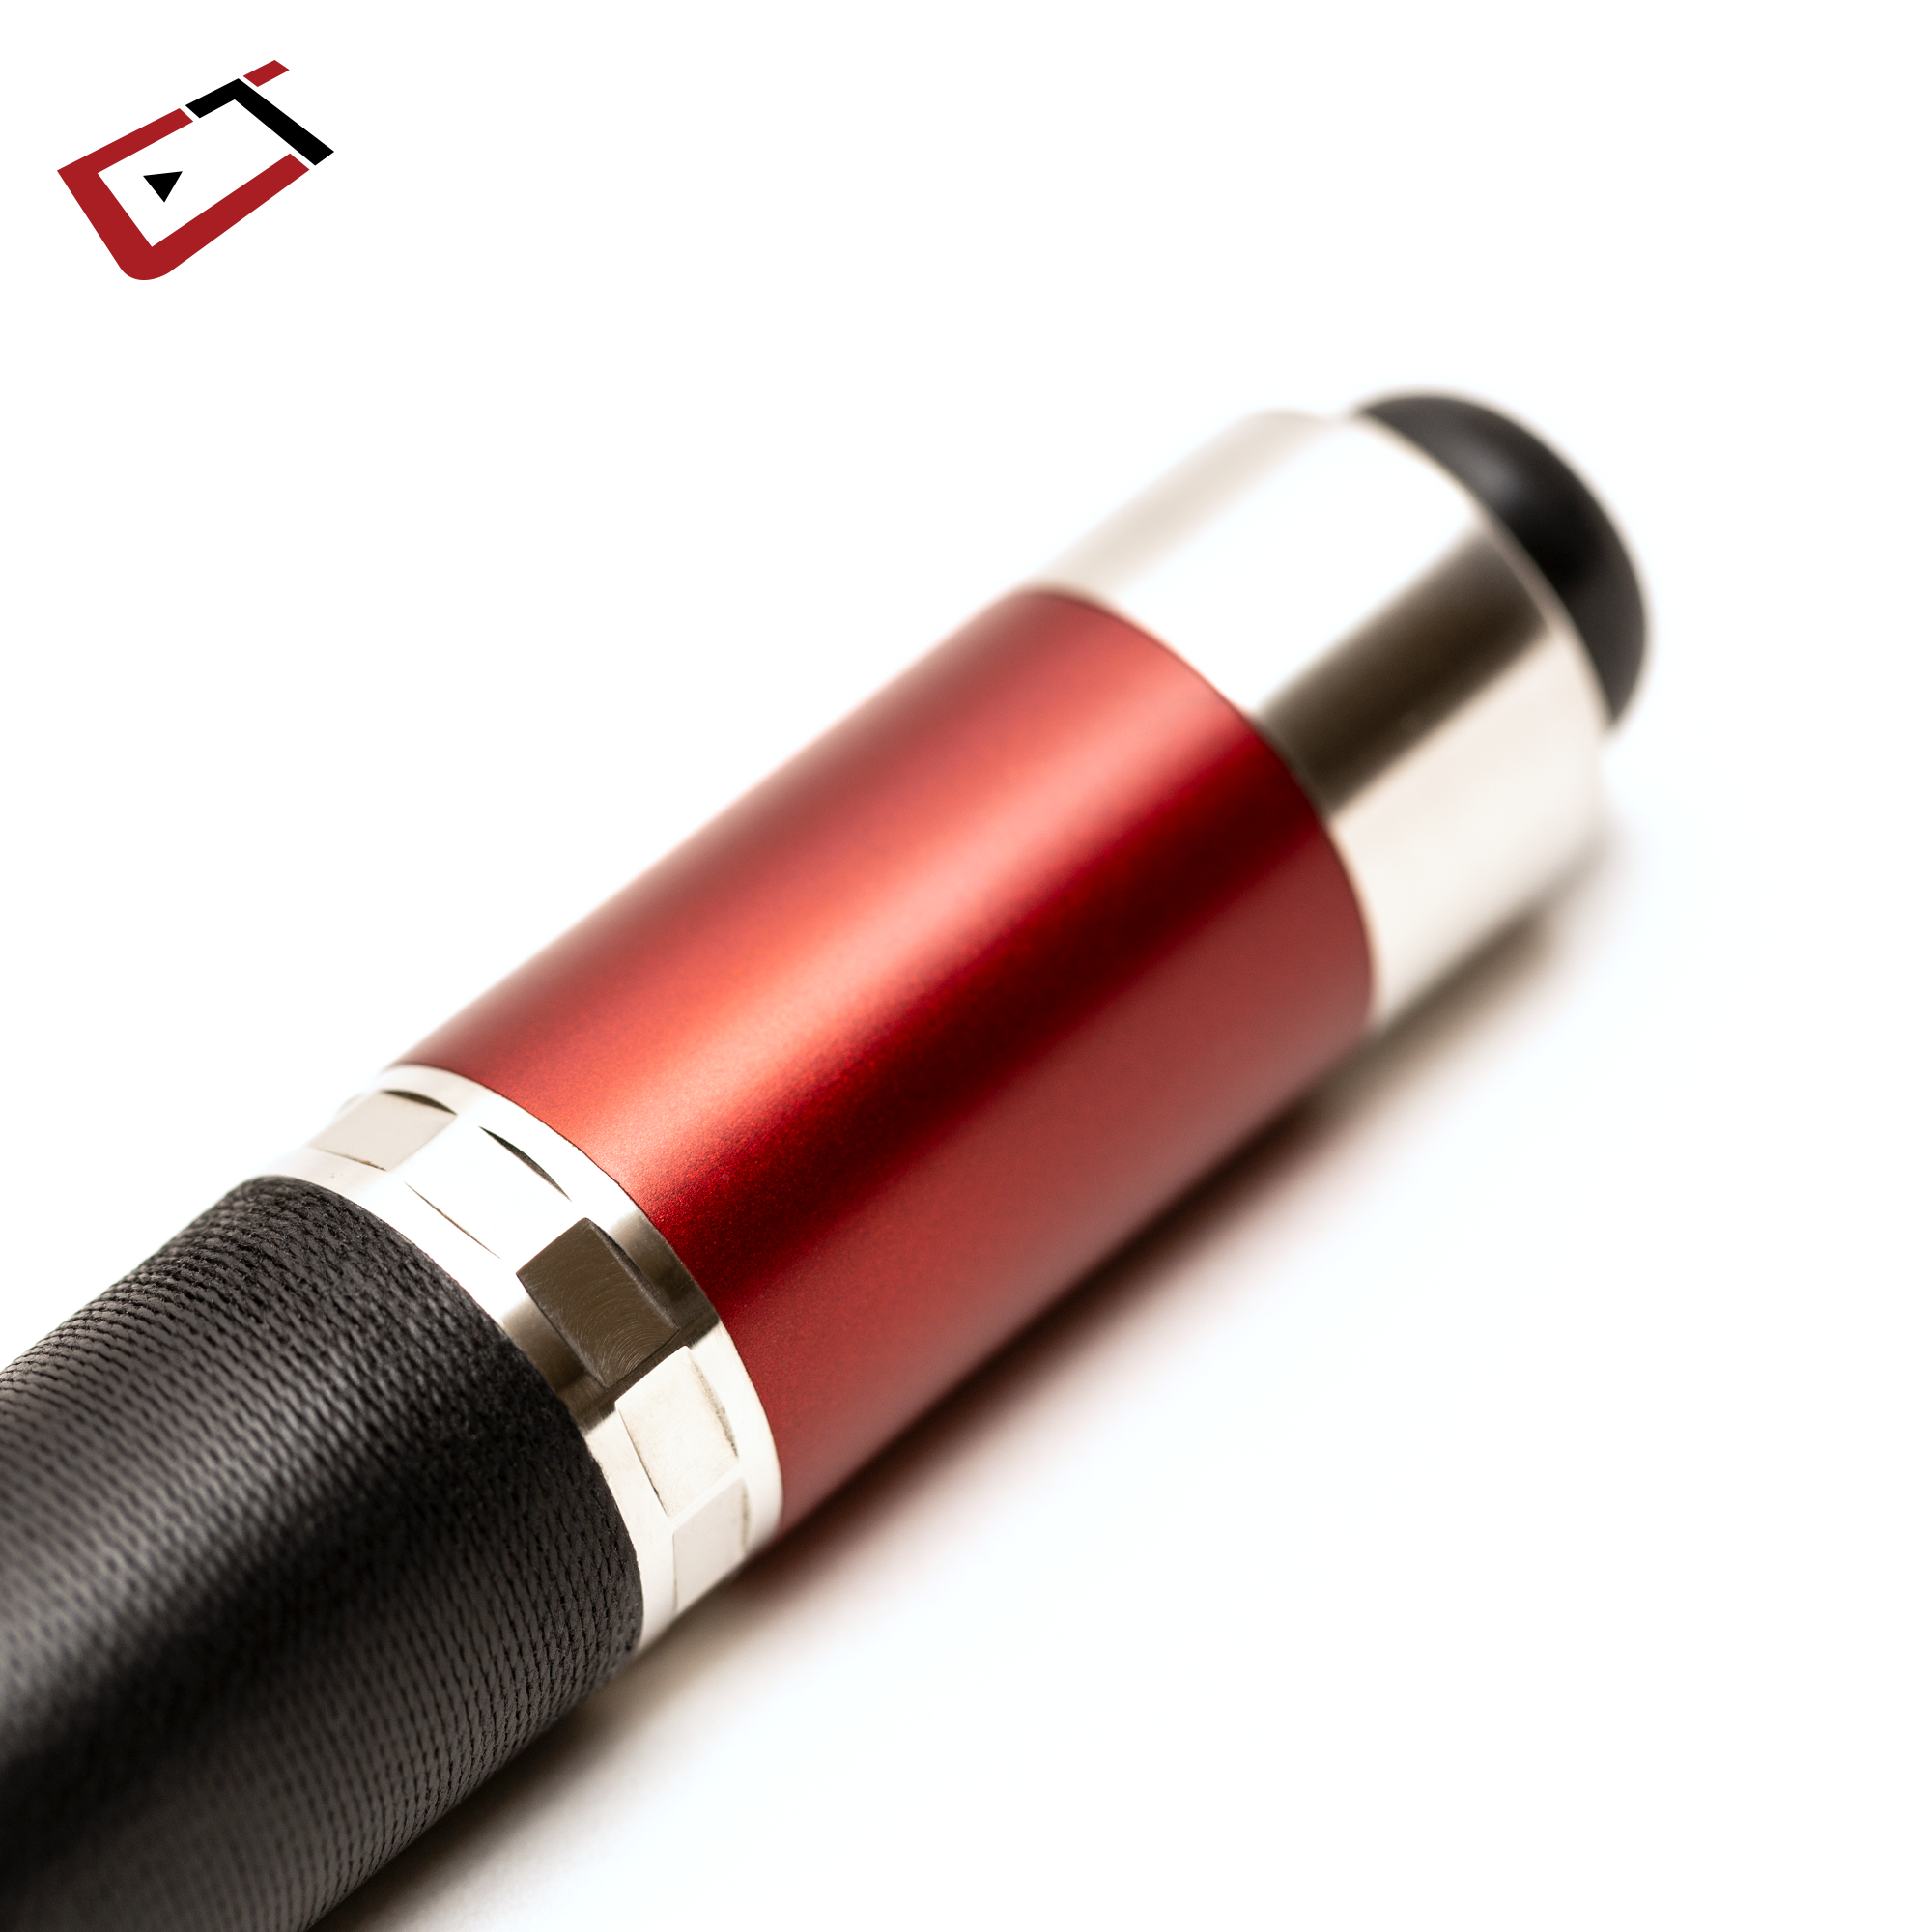 Duet Combo Grading Pen, Red/Black